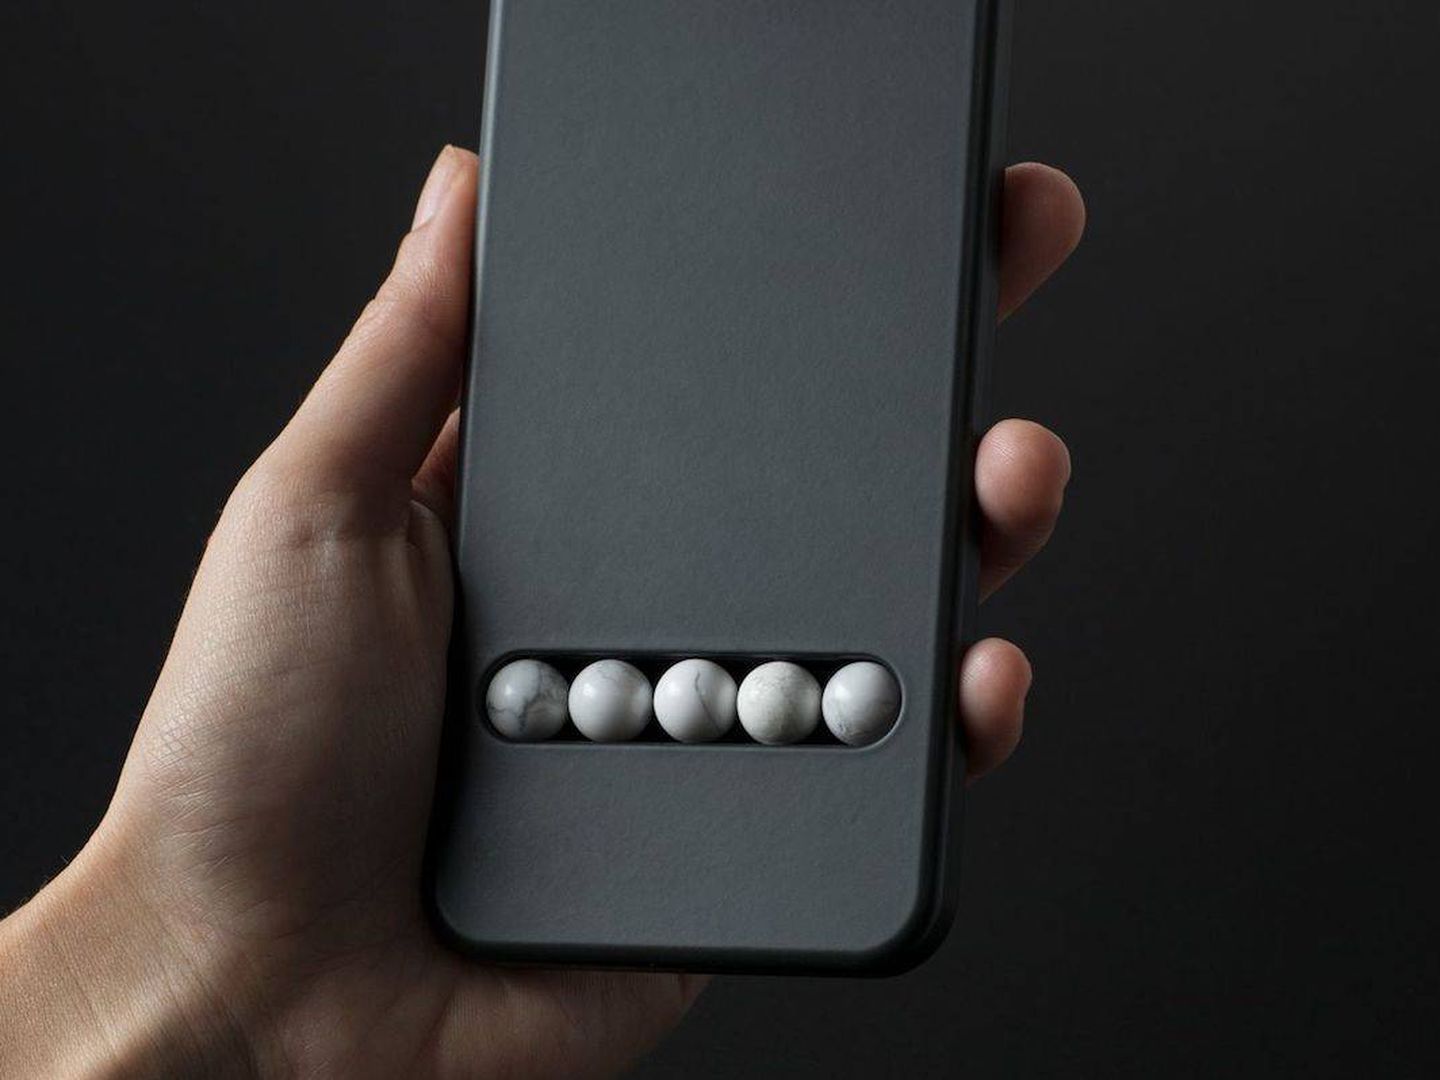 Puedes deslizar los dedos sobre las cuentas del Substitute Phone como si fuera una pantalla táctil (Fuente: Leonhard Hilzensauer)